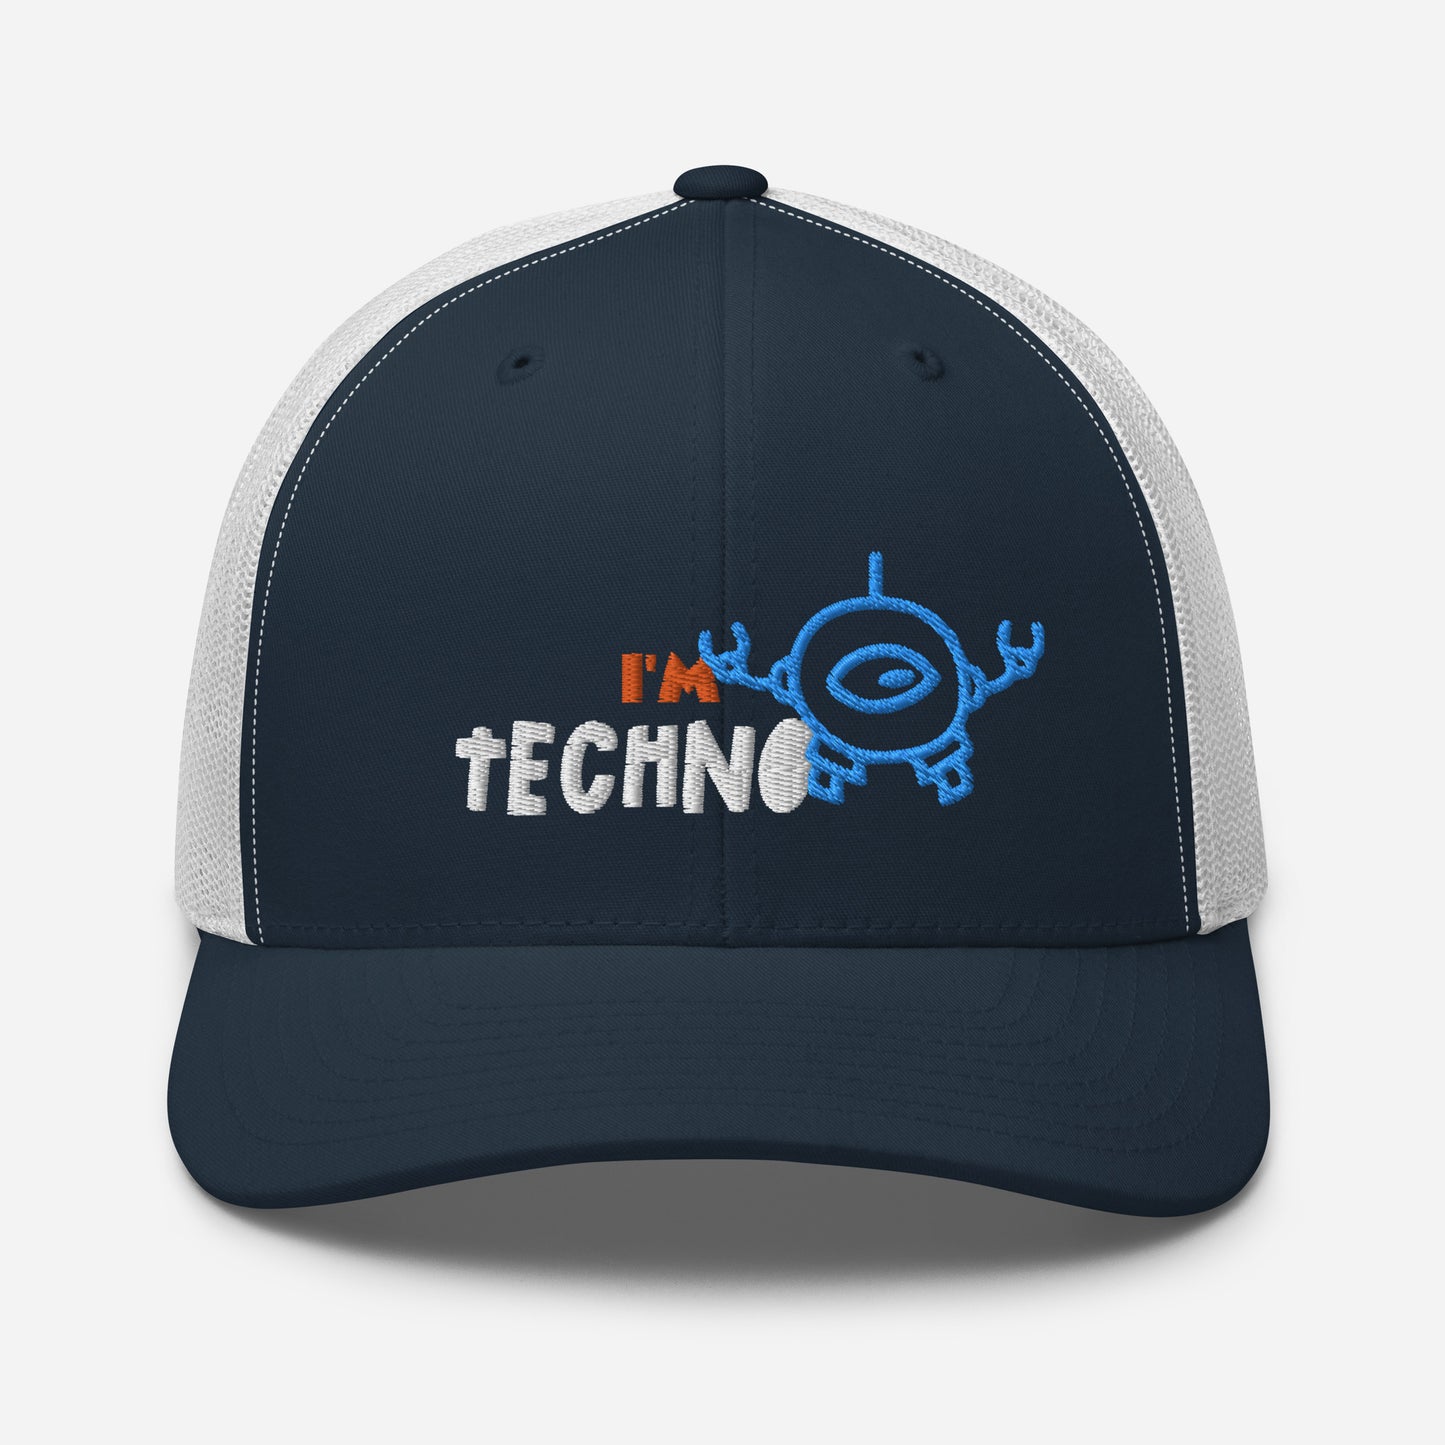 I'M TECHNO - Trucker Cap